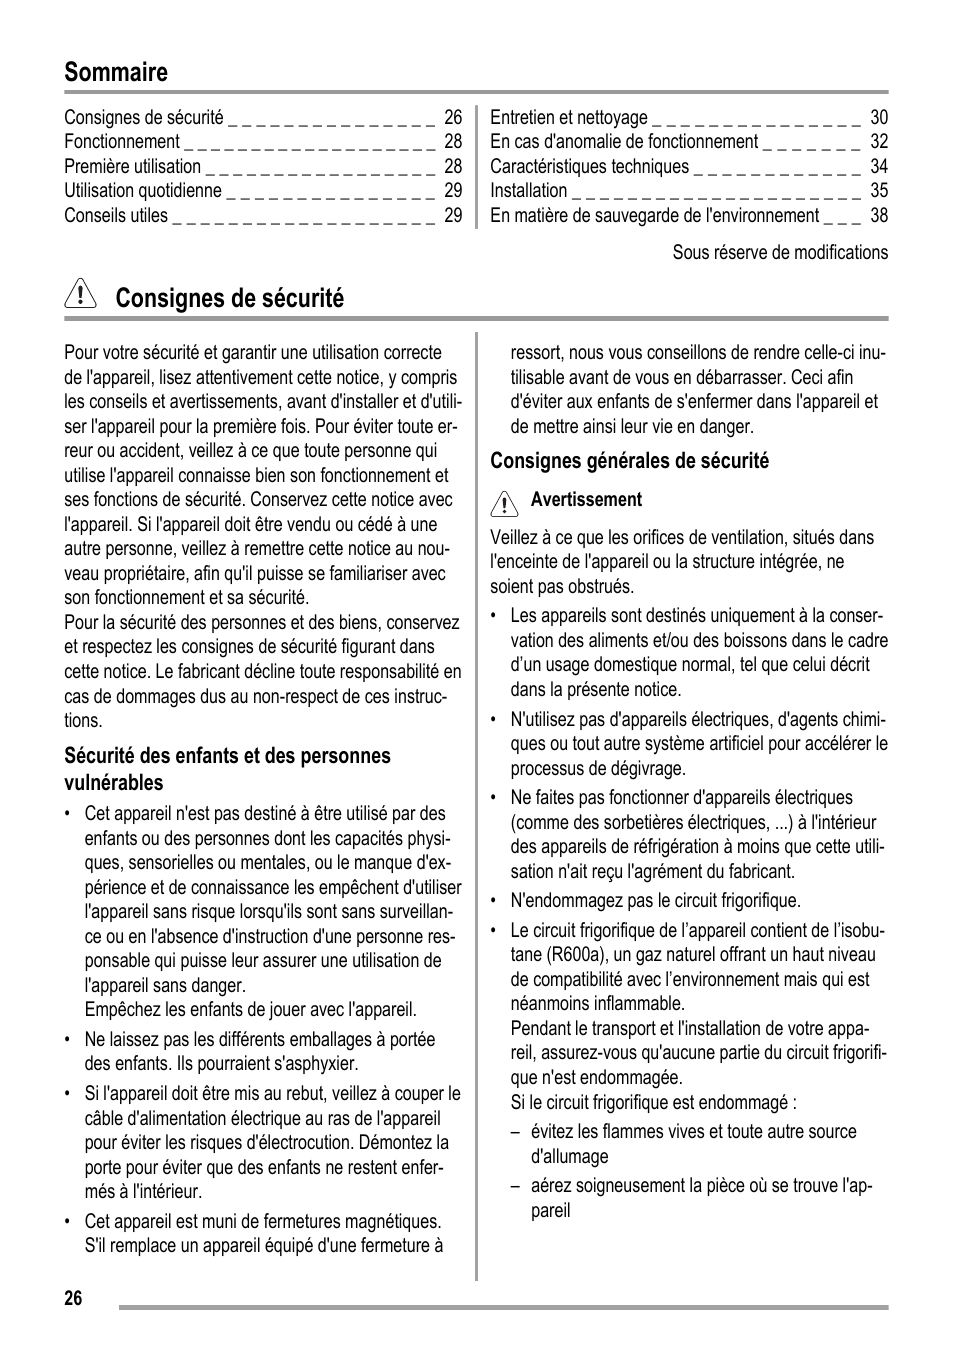 Sommaire, Consignes de sécurité | ZANKER KBT 23001 SB User Manual | Page 26 / 52